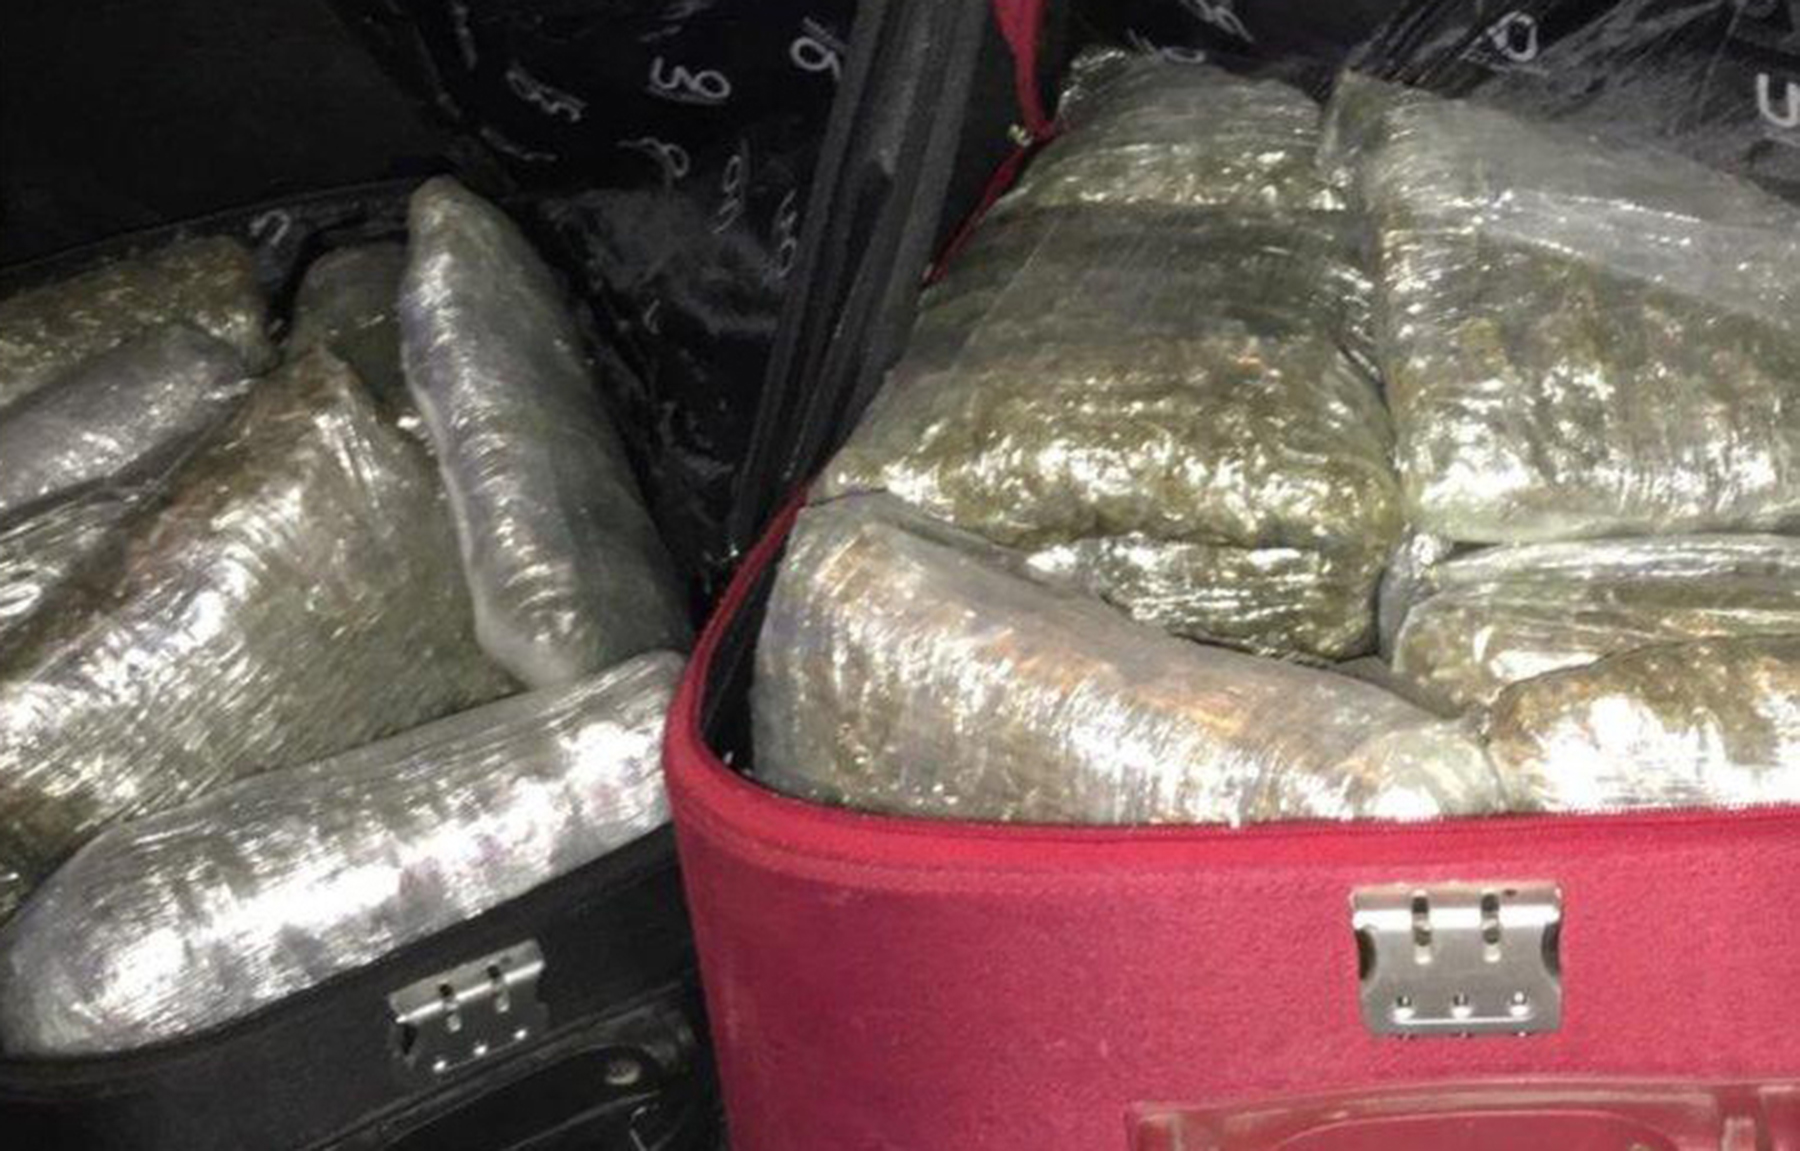 Полиција у три одвојене акције, запленила више од 17 килограма марихуане, 124 грама кокаина и ухапсила пет особа